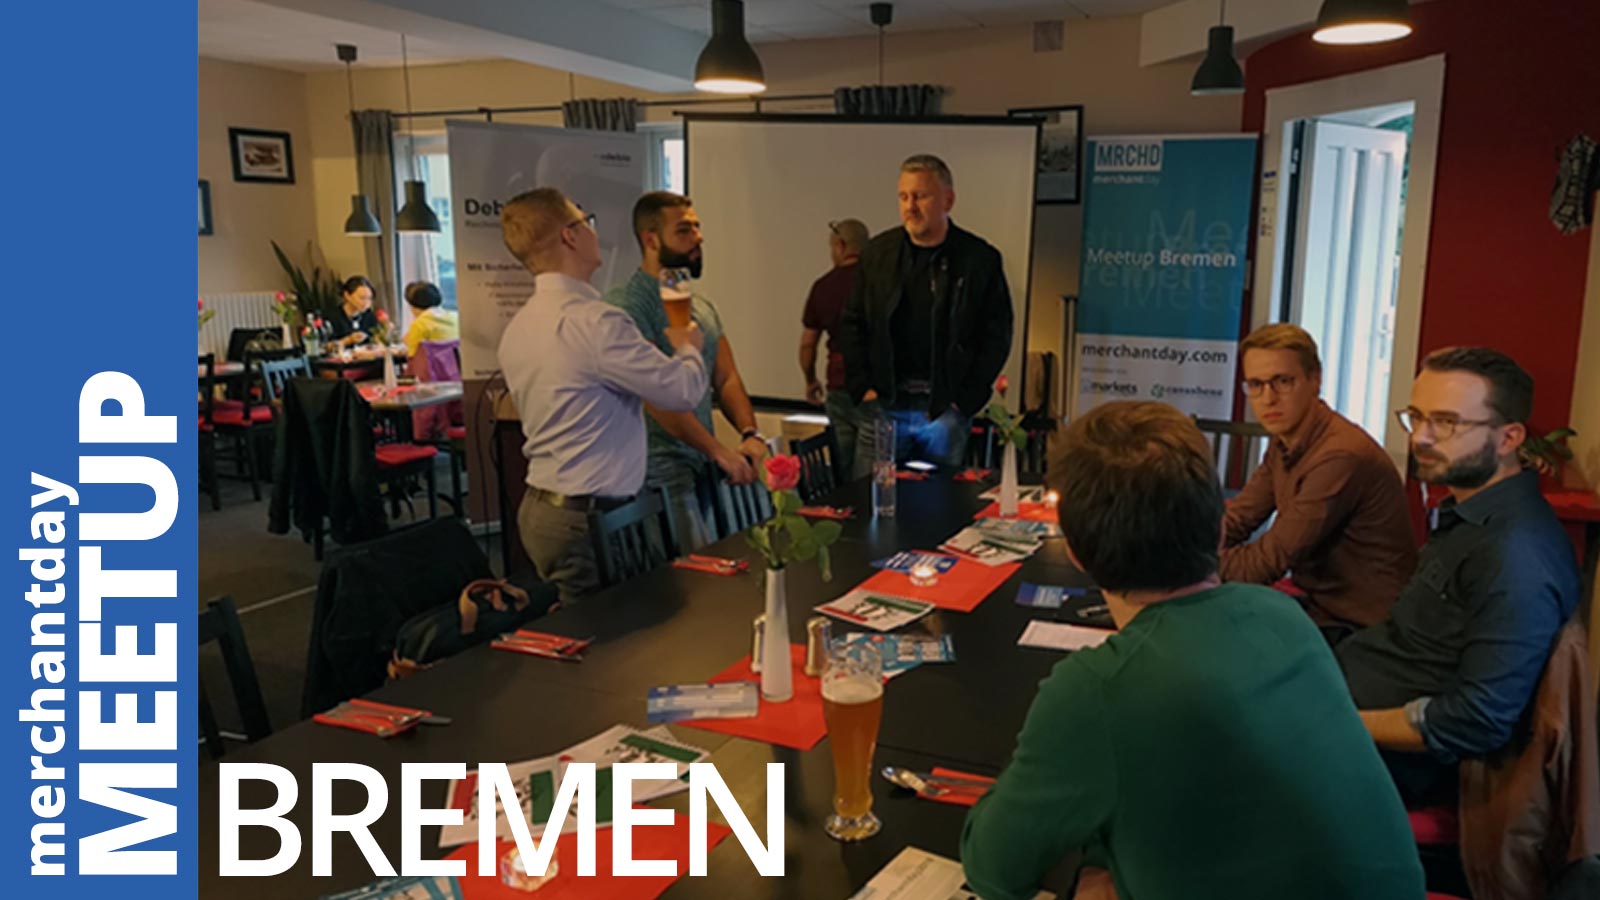 merchantday-meetup-bremen-2018